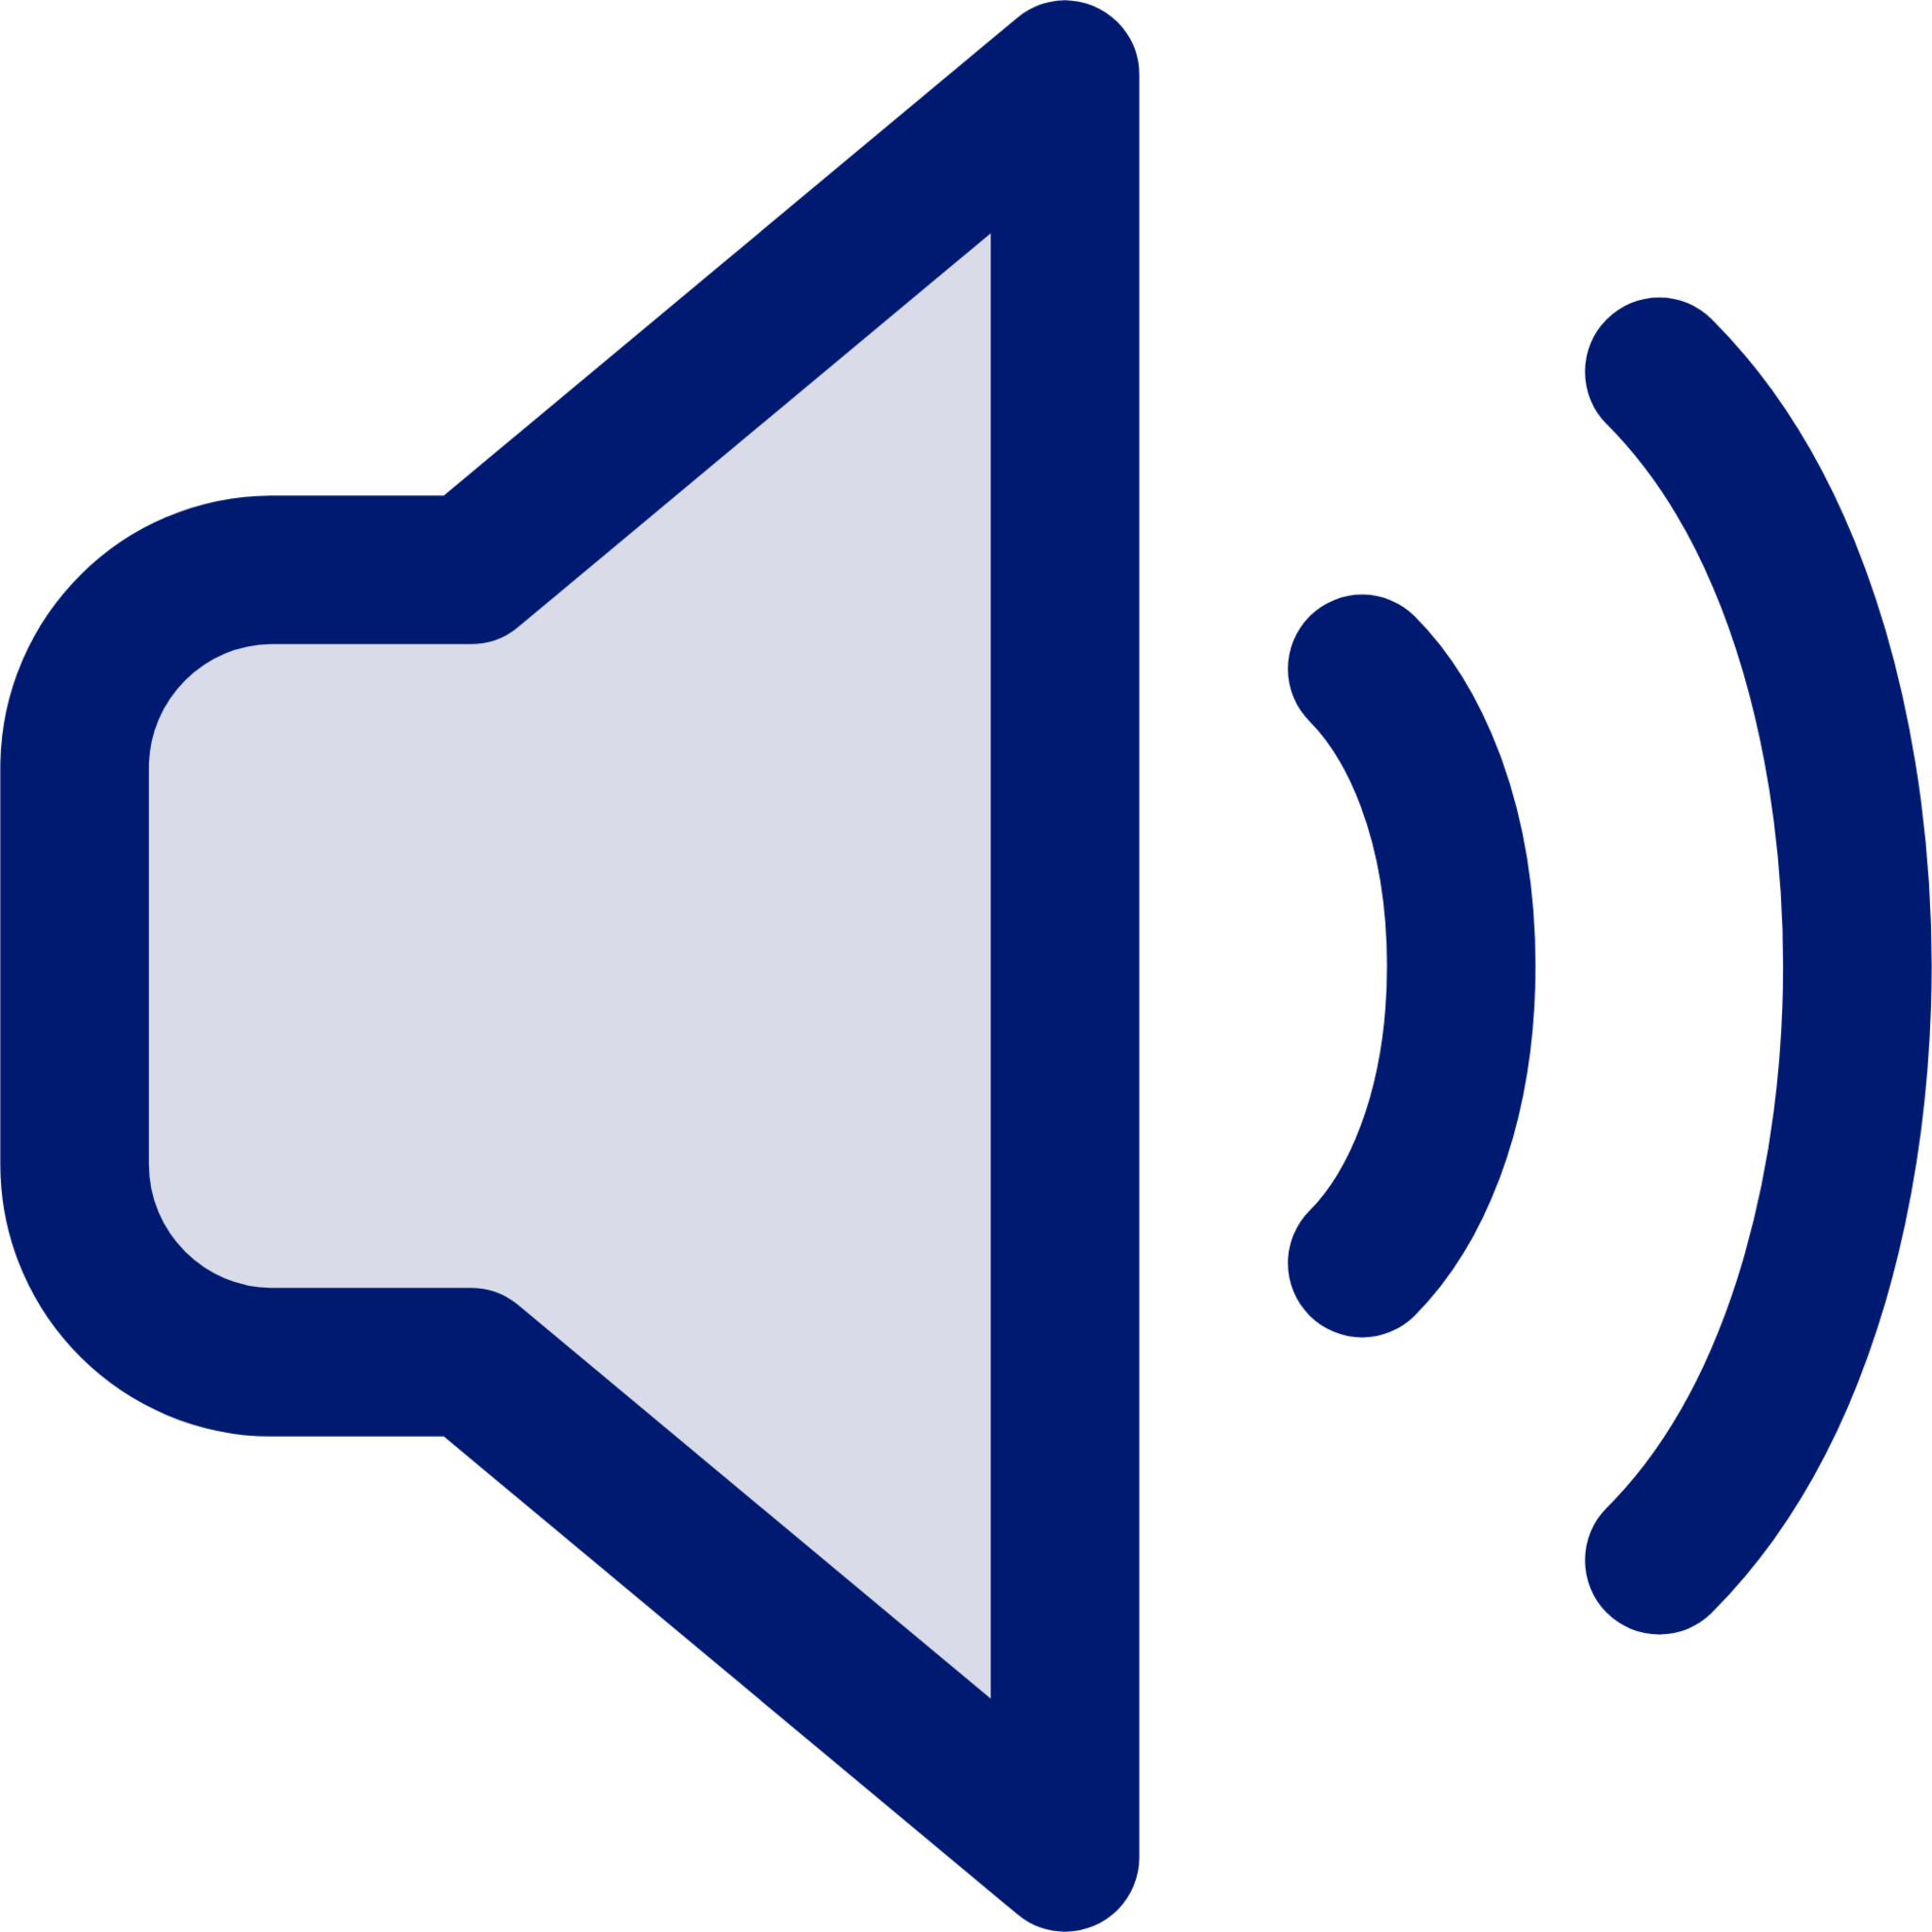 speaker 2 icon